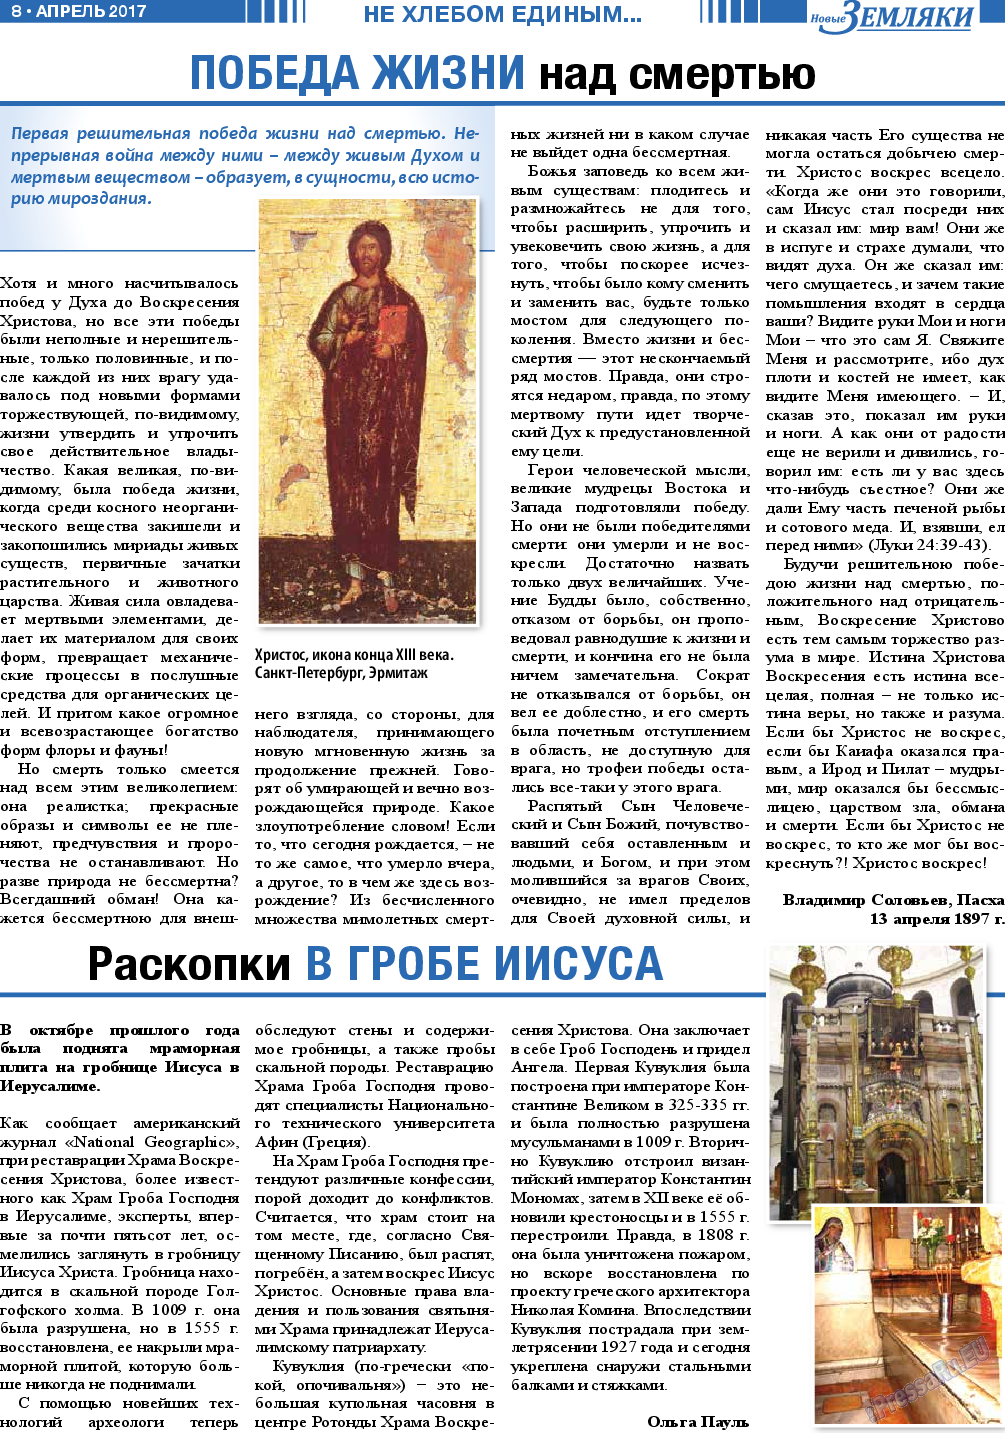 Новые Земляки (газета). 2017 год, номер 4, стр. 8